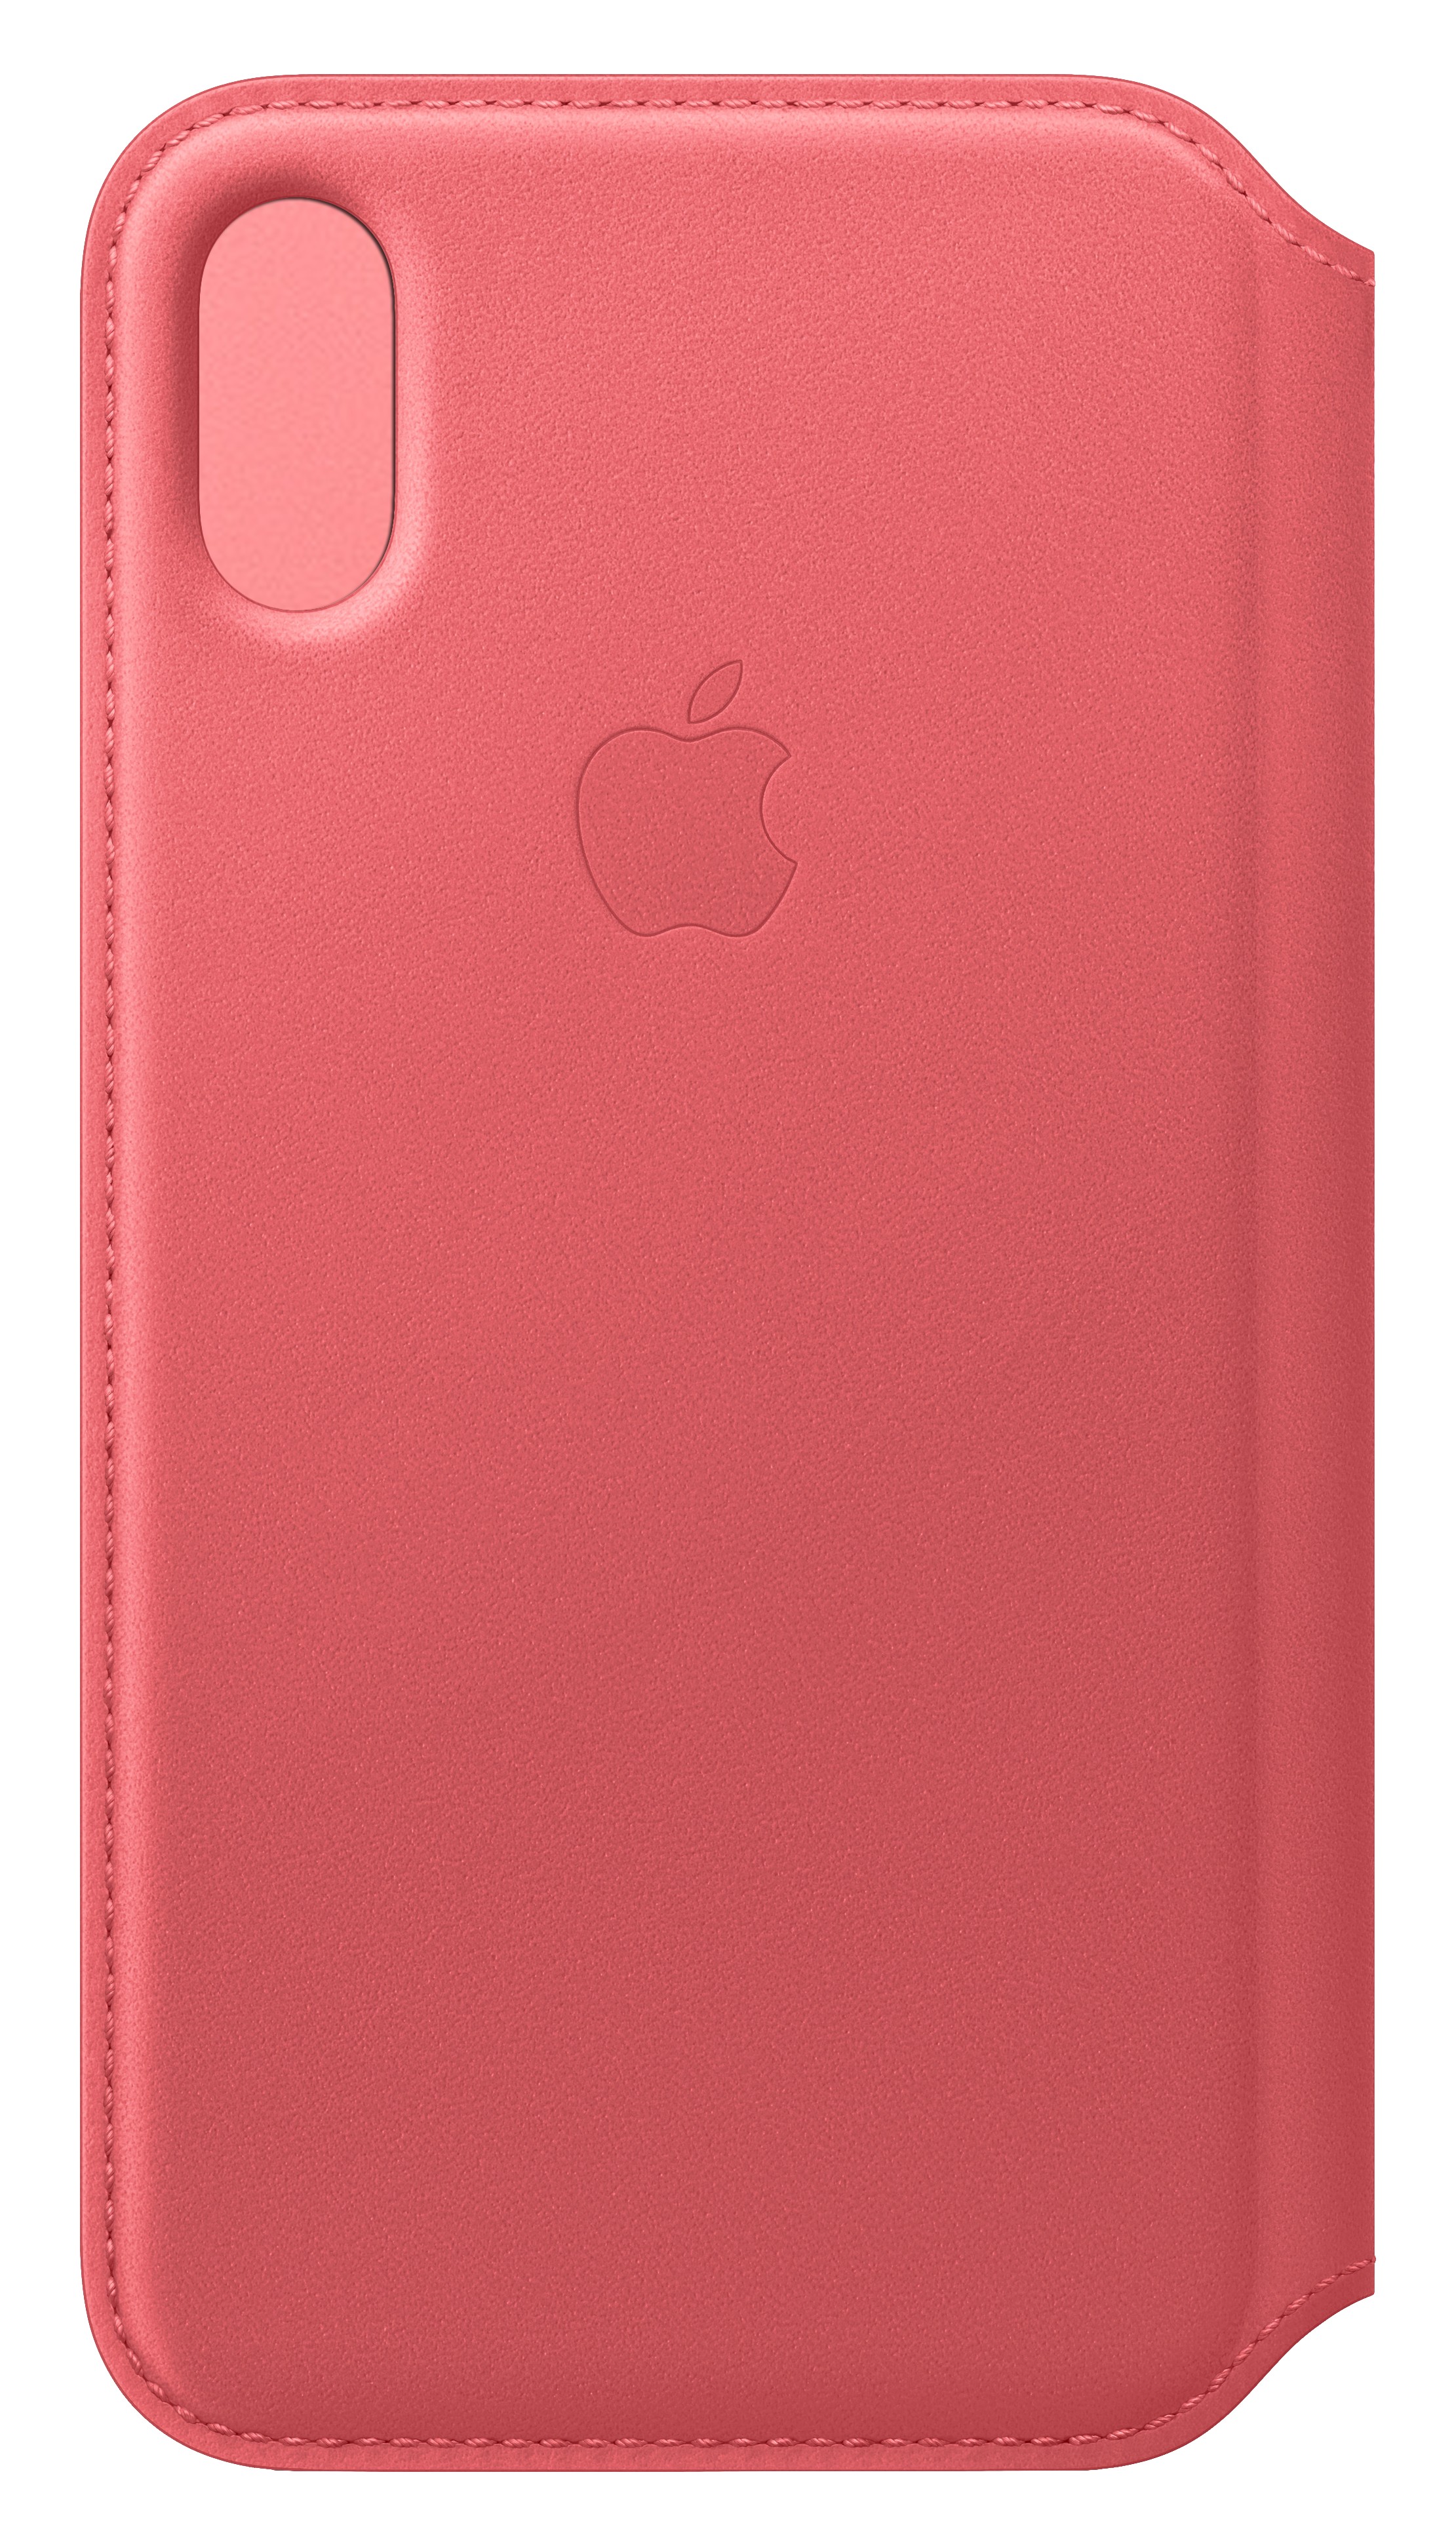 Comprar Funda Apple iPhone X-XS Piel Folio Rosa Peonia